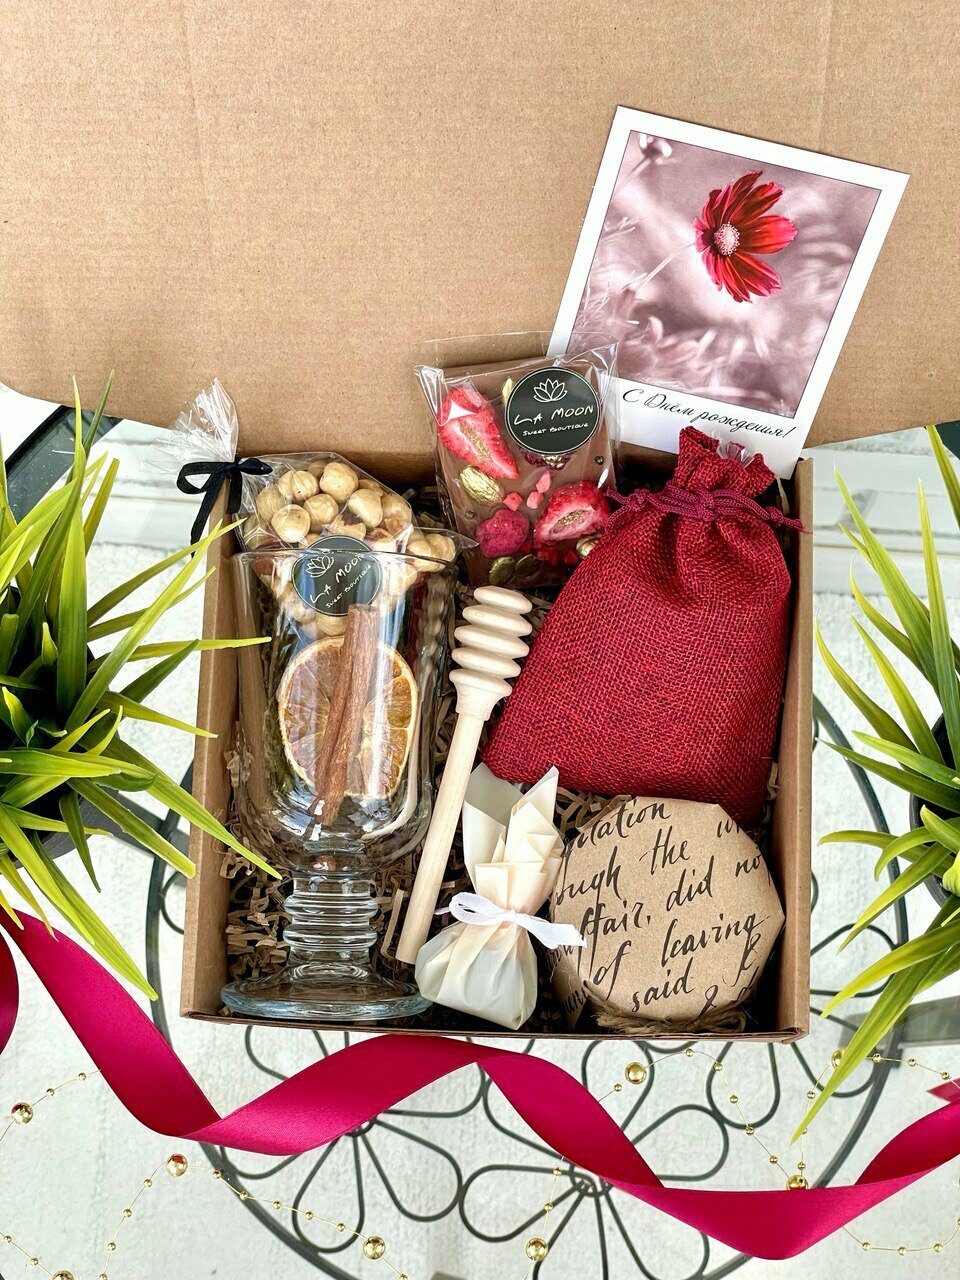 Подарочный набор с Бельгийским шоколадом ручной работы, бокалом для глинтвейна, лавандовым медом и орешками /Подарочный набор La Moon /Подарок на День Рождения